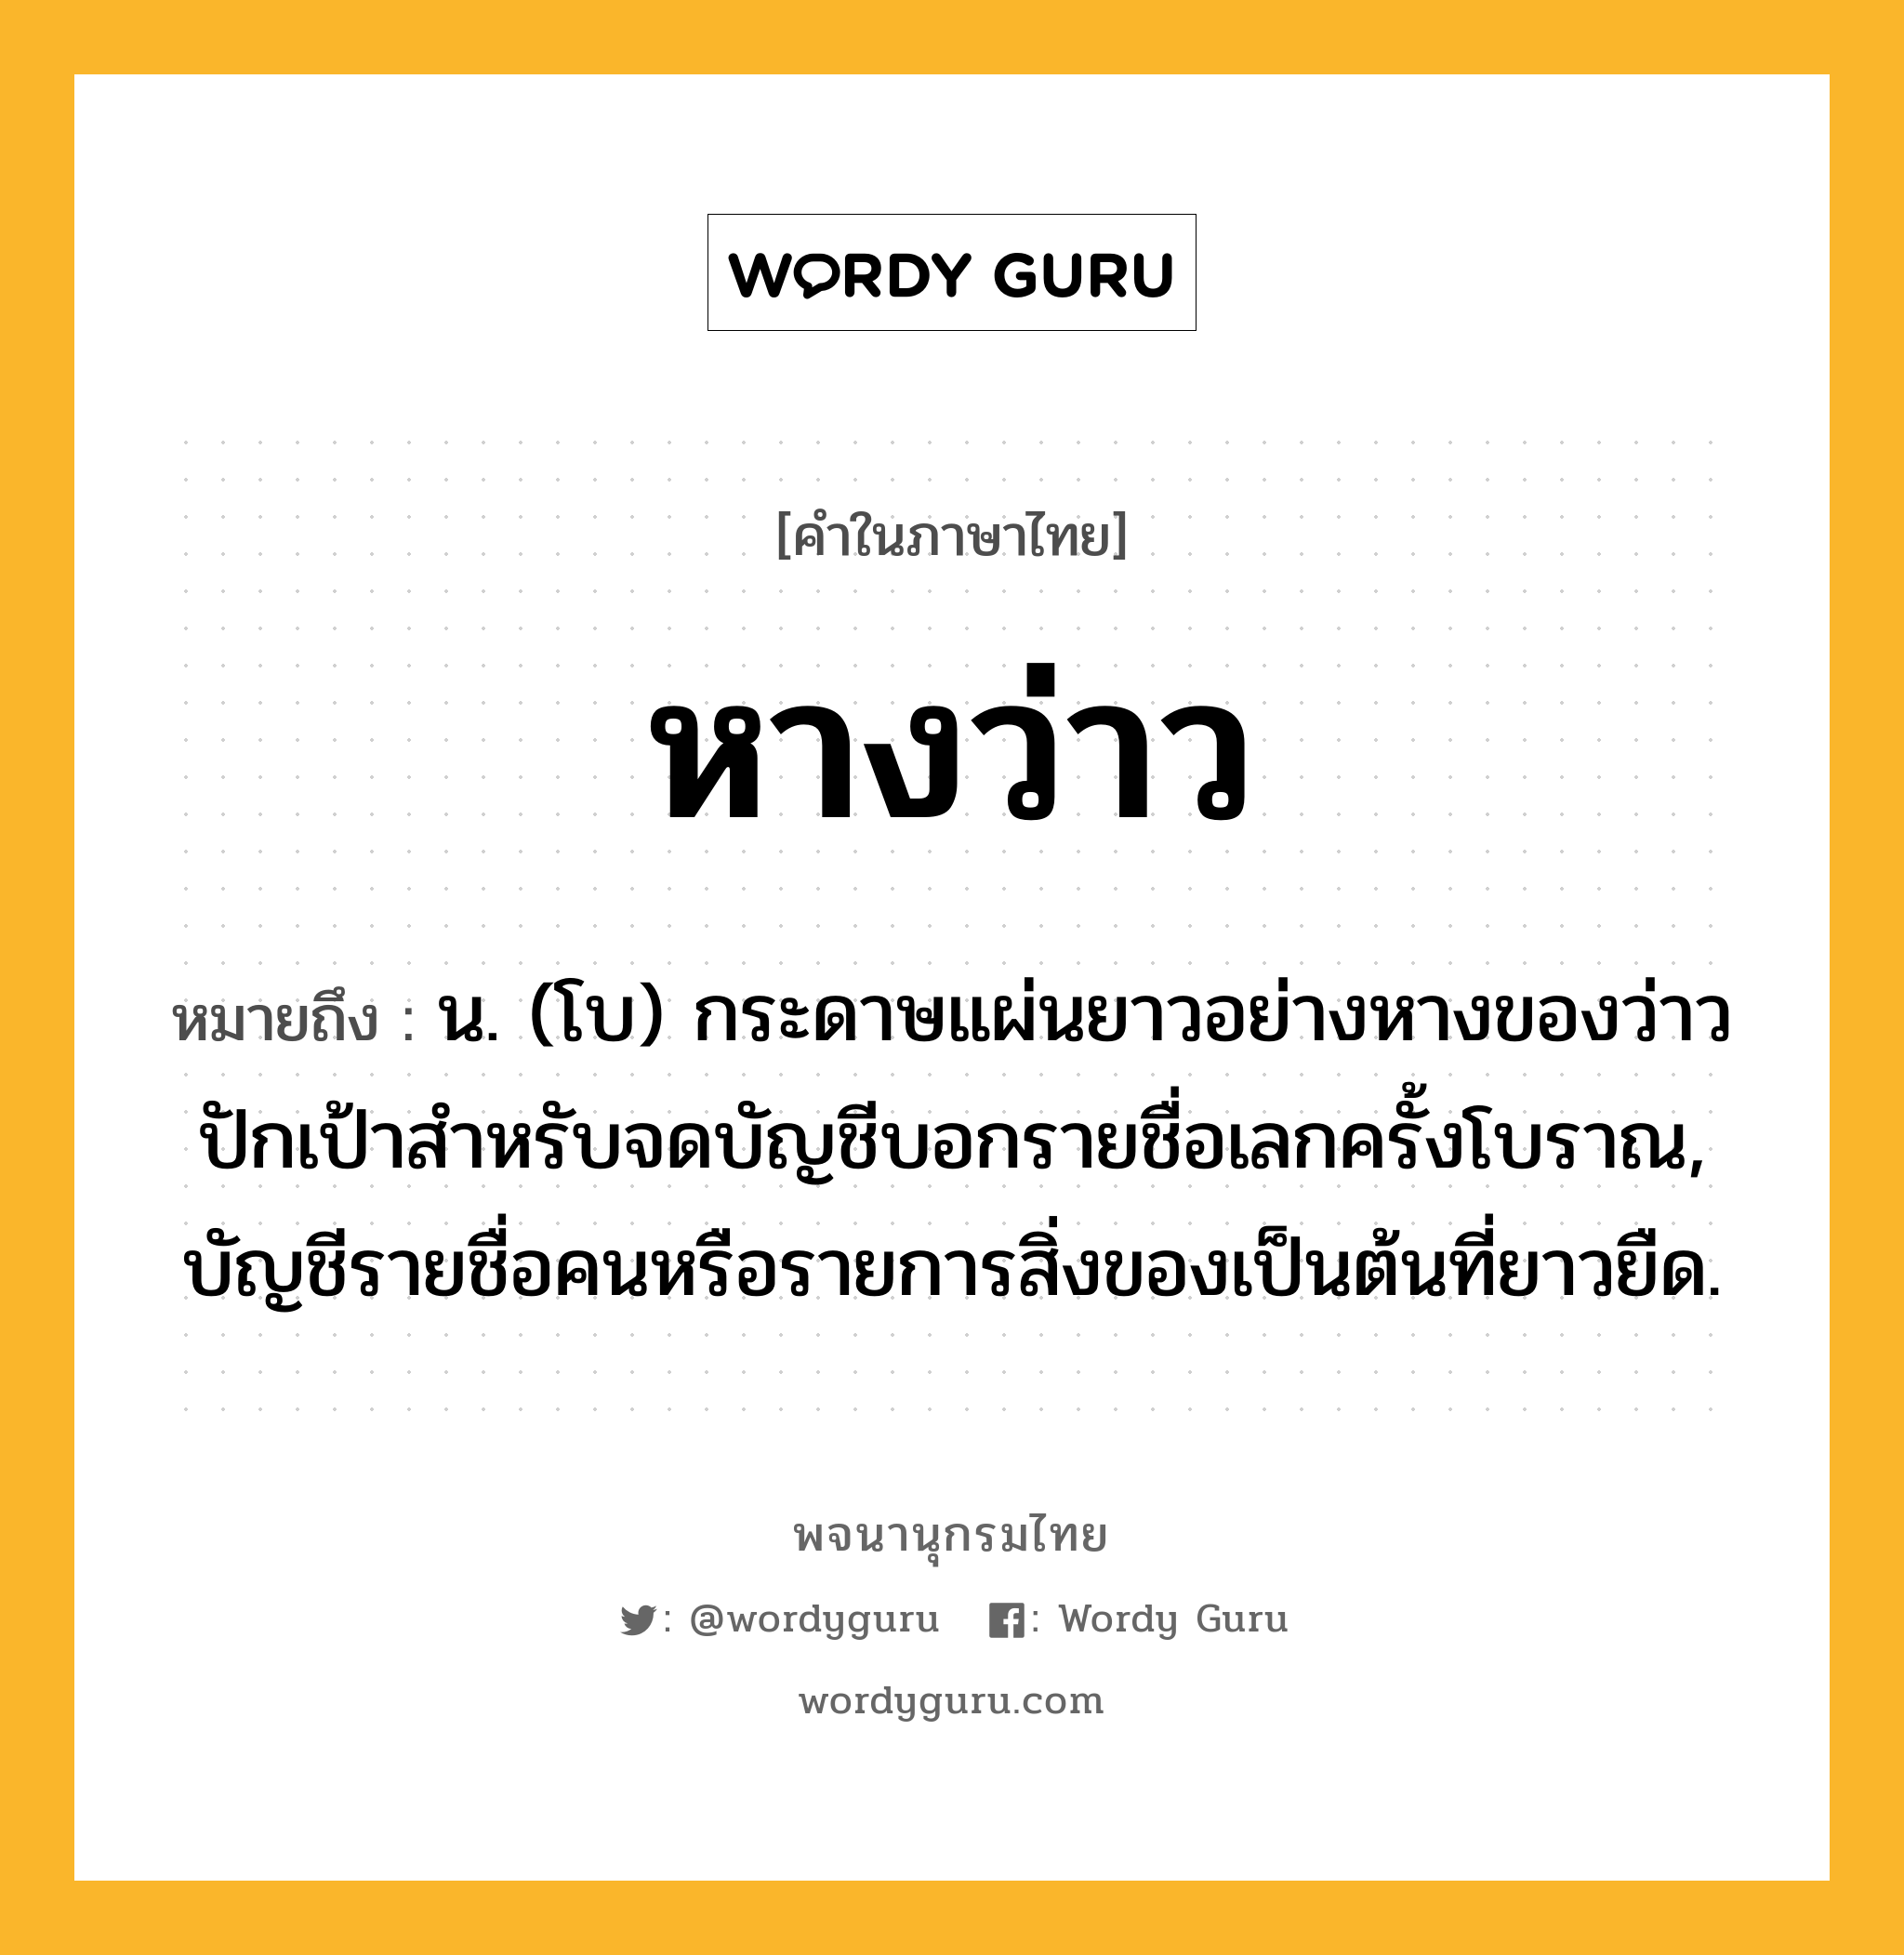 หางว่าว หมายถึงอะไร?, คำในภาษาไทย หางว่าว หมายถึง น. (โบ) กระดาษแผ่นยาวอย่างหางของว่าวปักเป้าสําหรับจดบัญชีบอกรายชื่อเลกครั้งโบราณ, บัญชีรายชื่อคนหรือรายการสิ่งของเป็นต้นที่ยาวยืด.